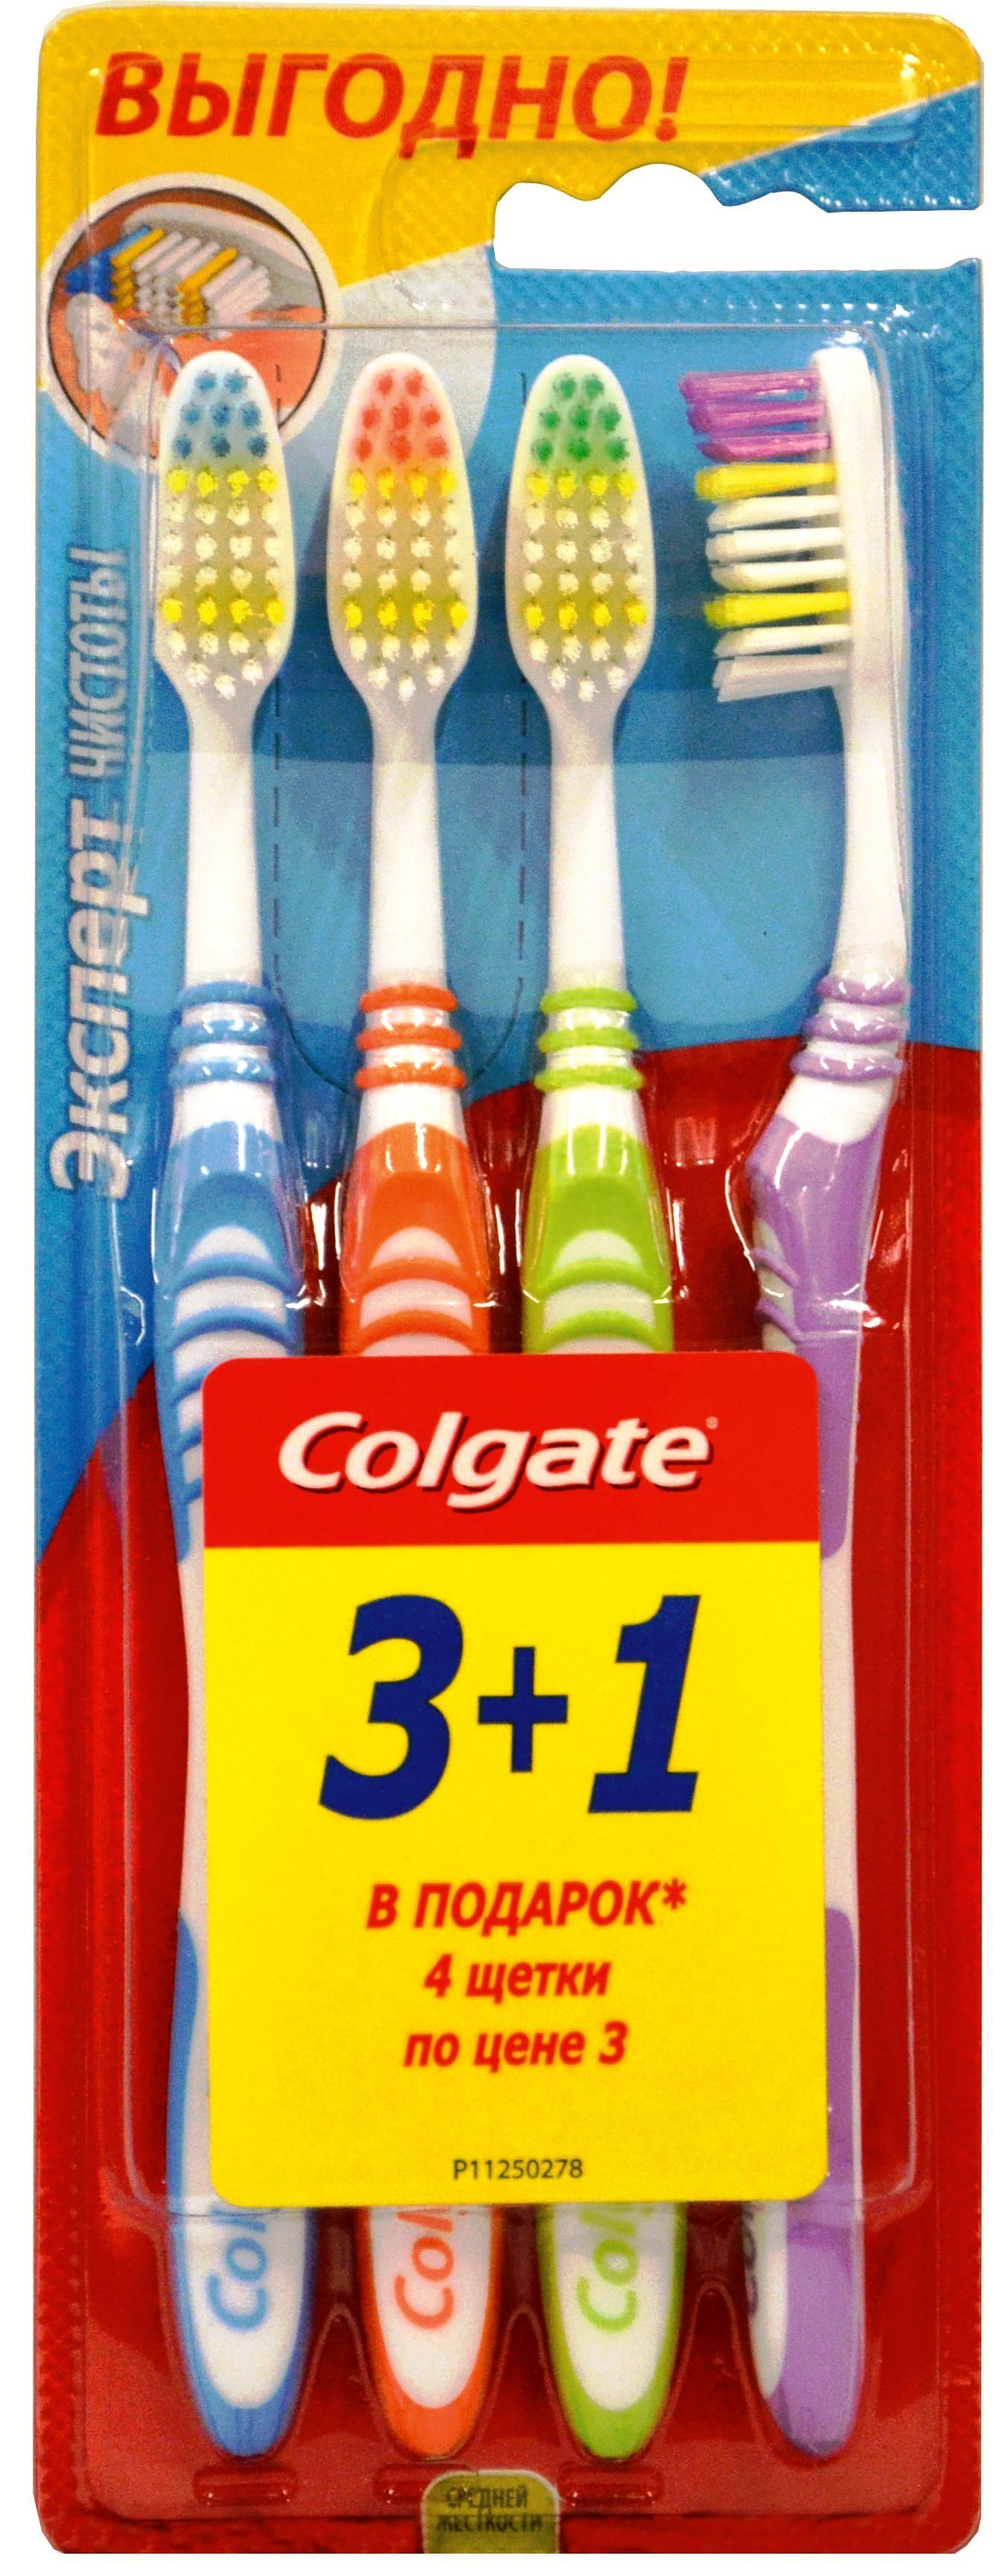 Зубная щетка Эксперт чистоты (средней жесткости), Colgate, 3 шт + 1 шт